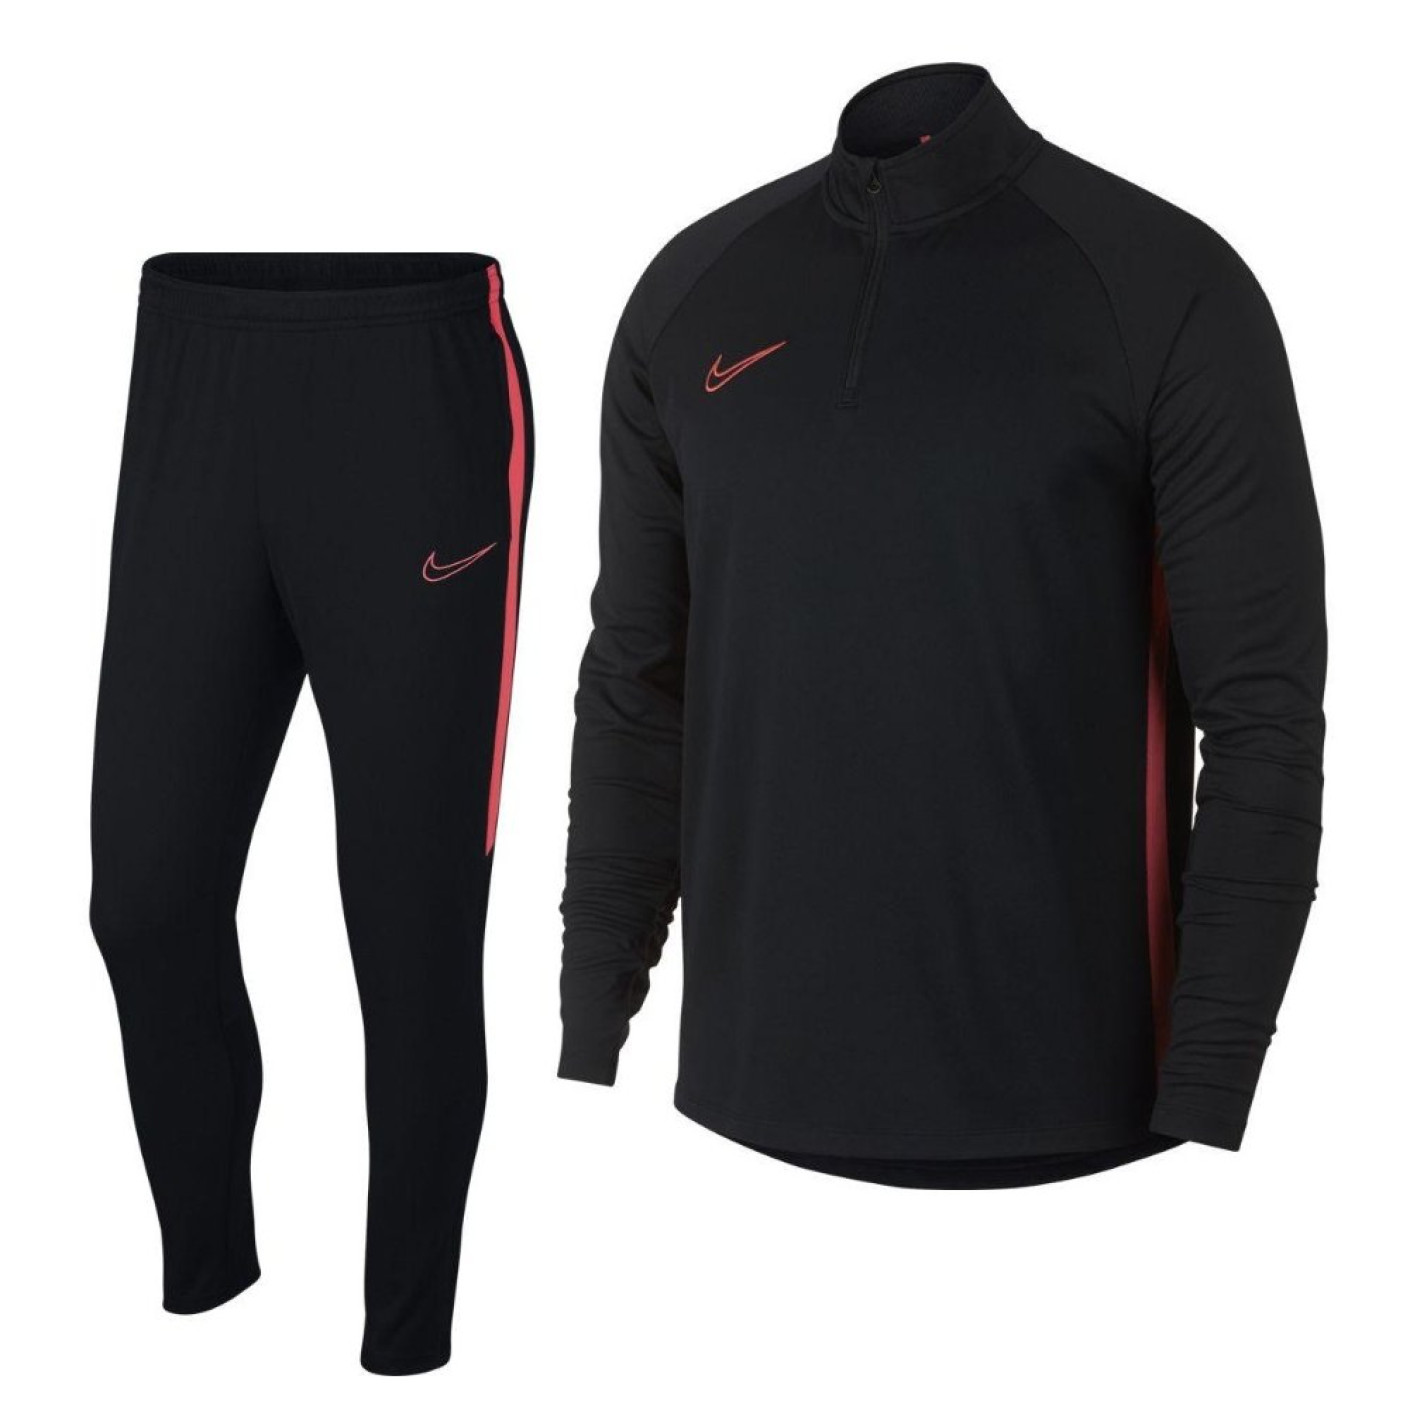 Nike Dry Academy Drill Trainingspak Zwart Roze